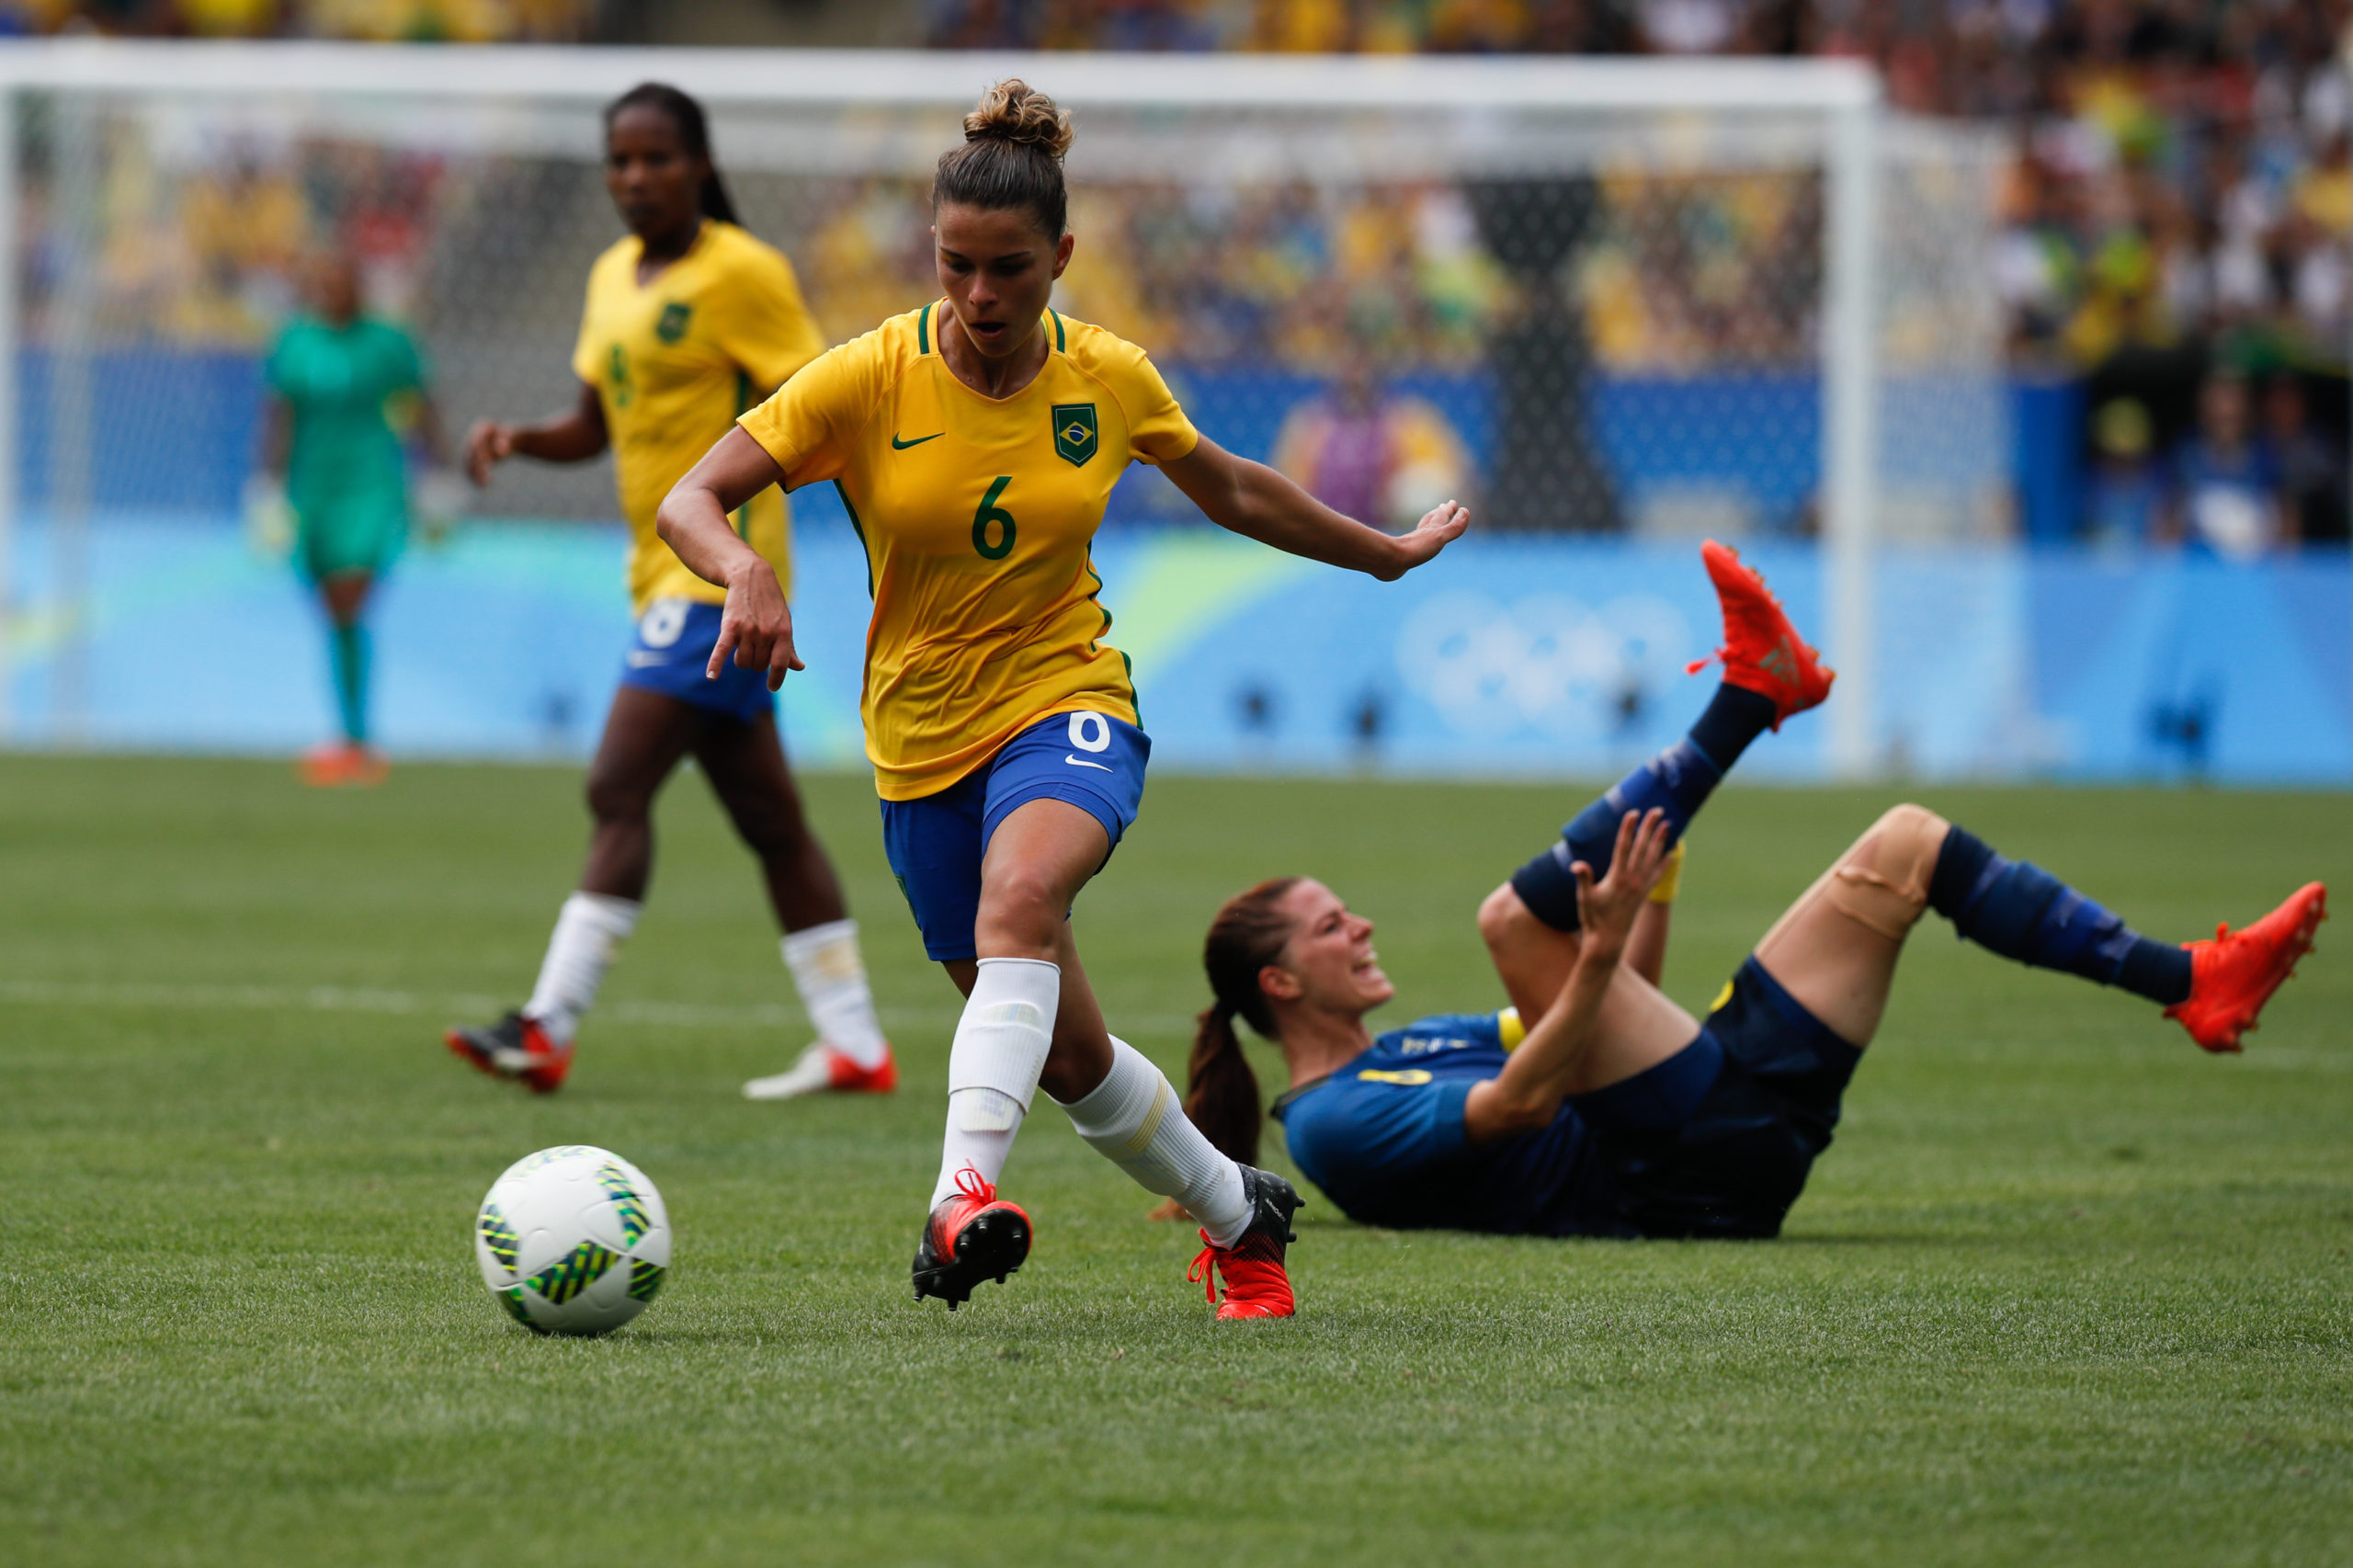 Mulheres e meninas no futebol: o preconceito contra elas no esporte